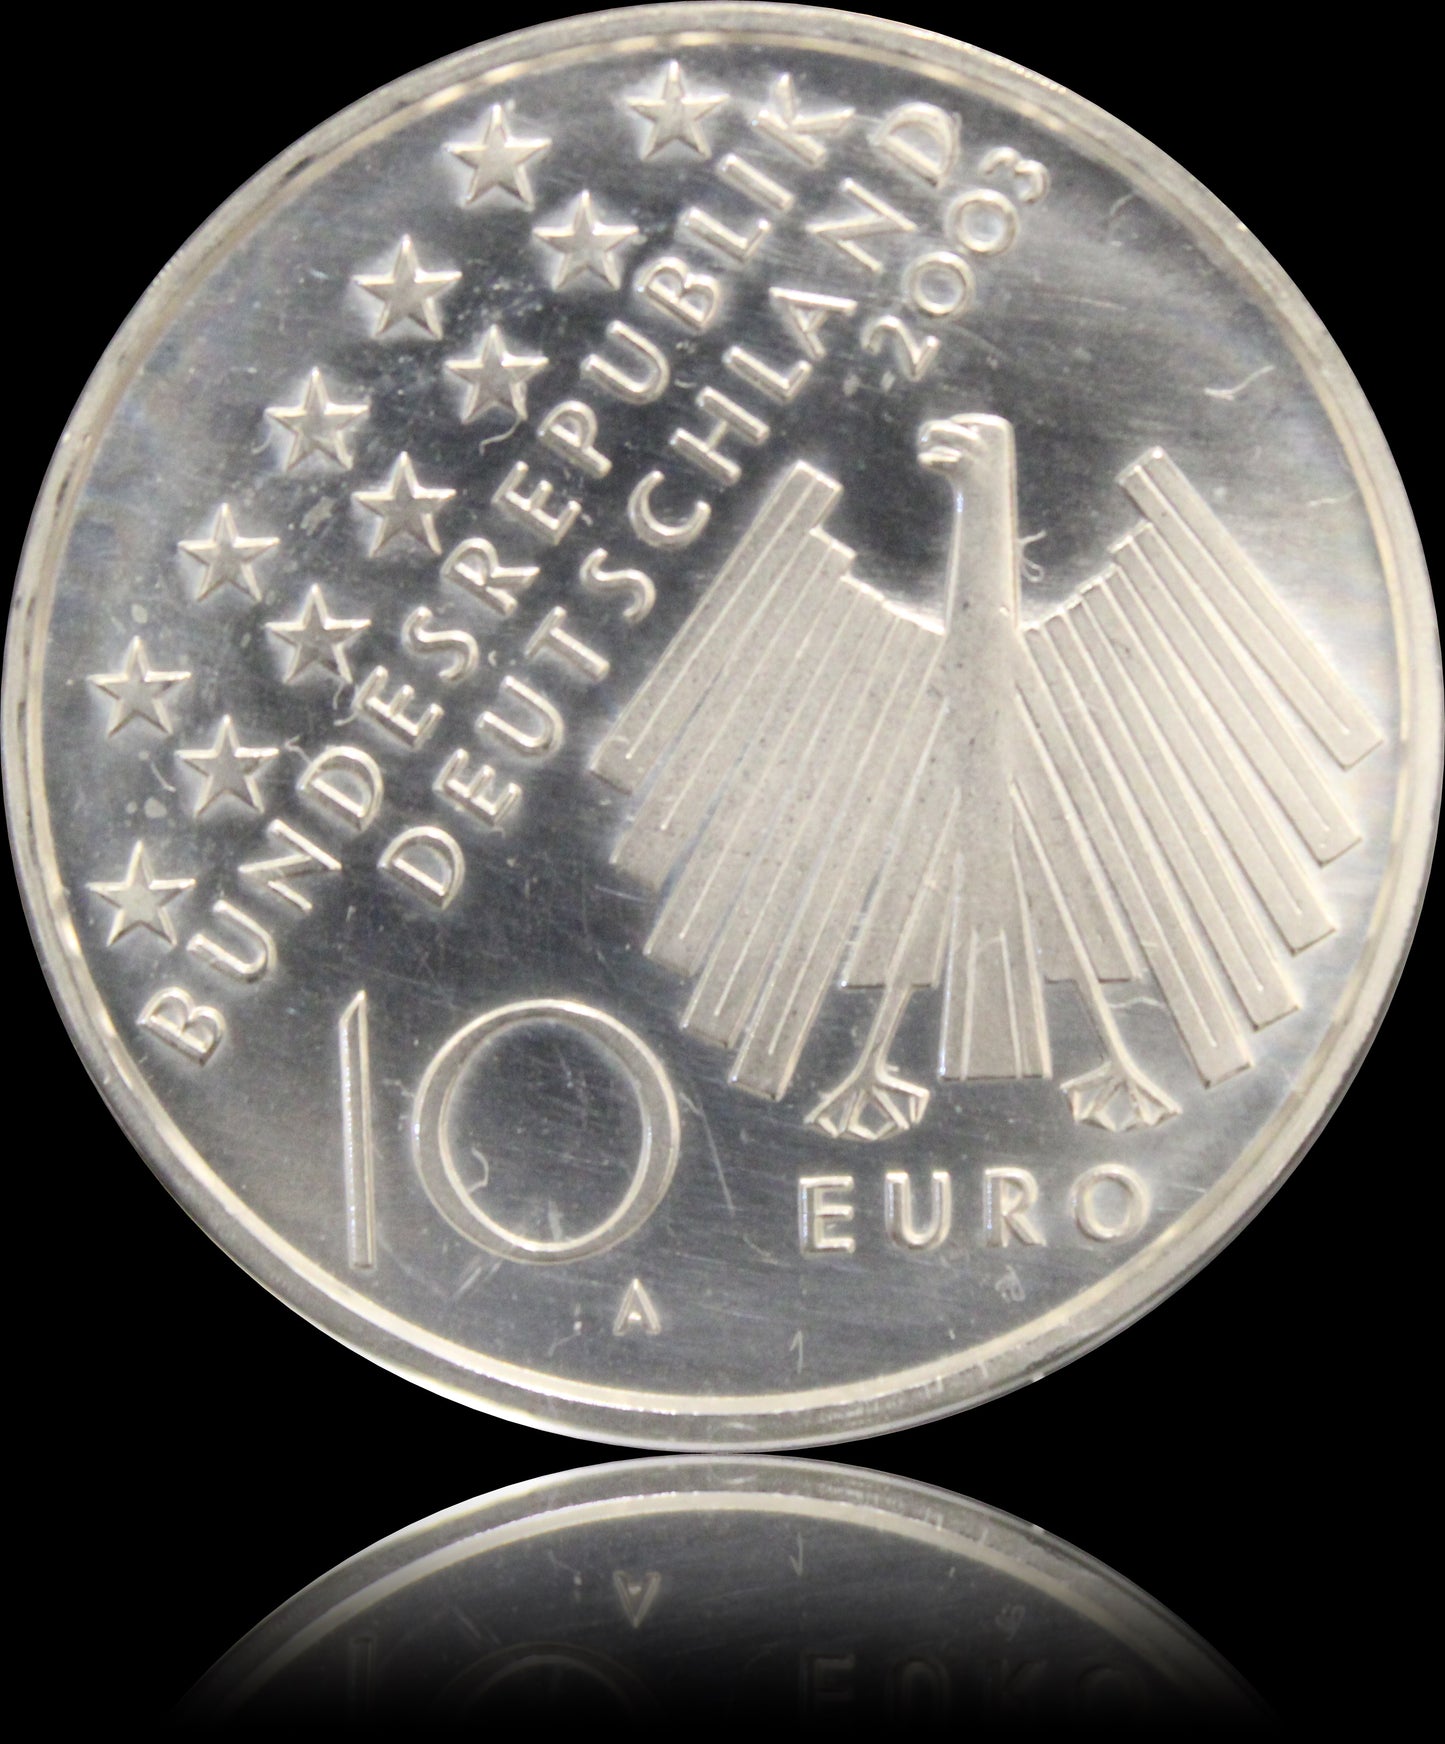 50 JAHRE VOLKSAUFSTAND 17. JUNI 1953, Serie 10 € Silber Gedenkmünzen Deutschland, Stempelglanz, 2003